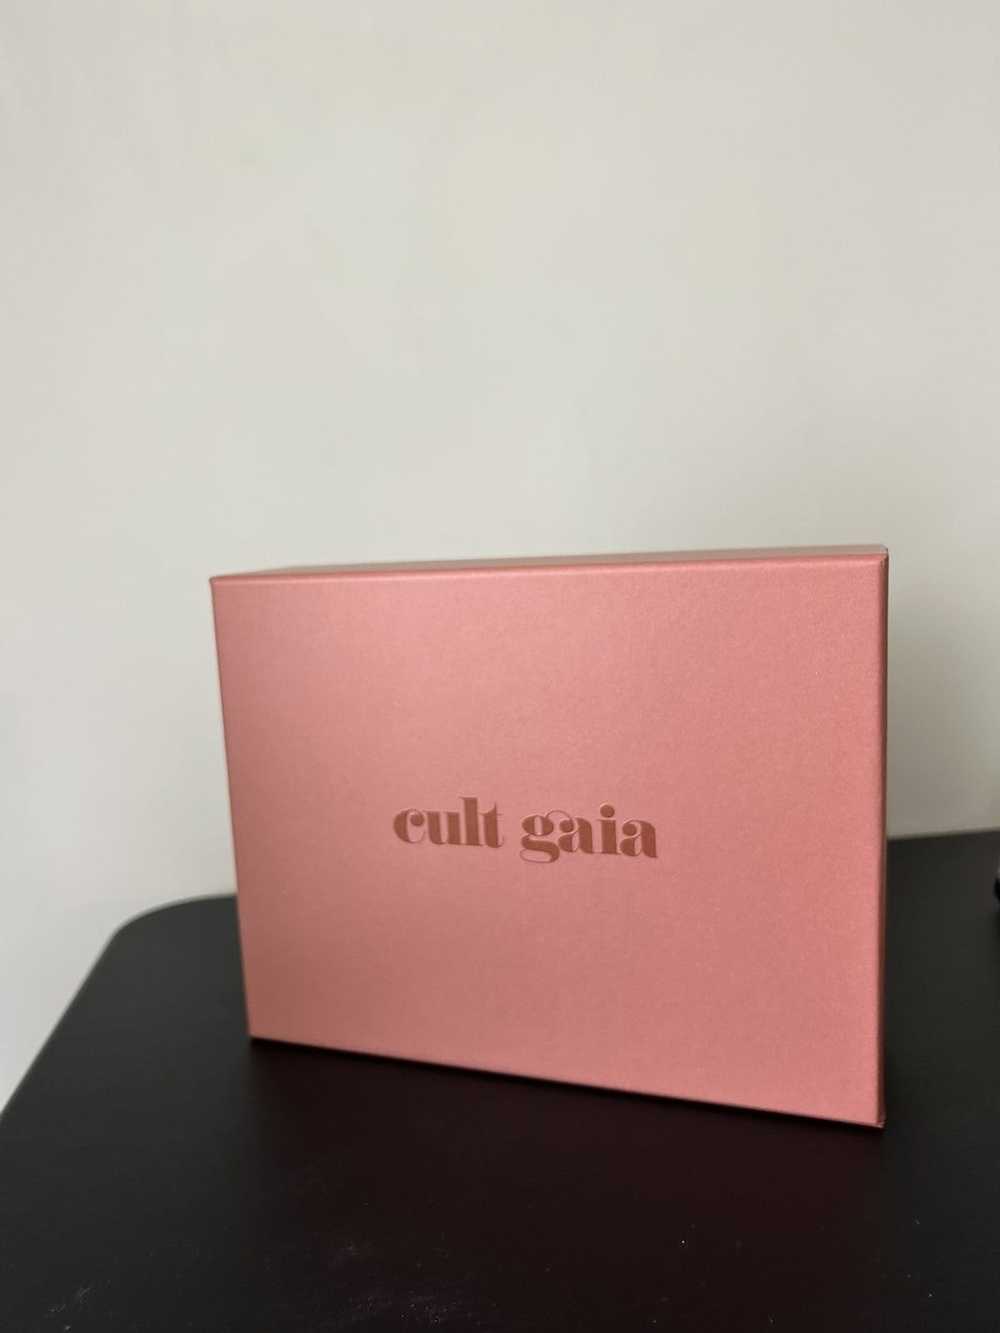 Cult Gaia Cult Gaia Gift Box - image 2